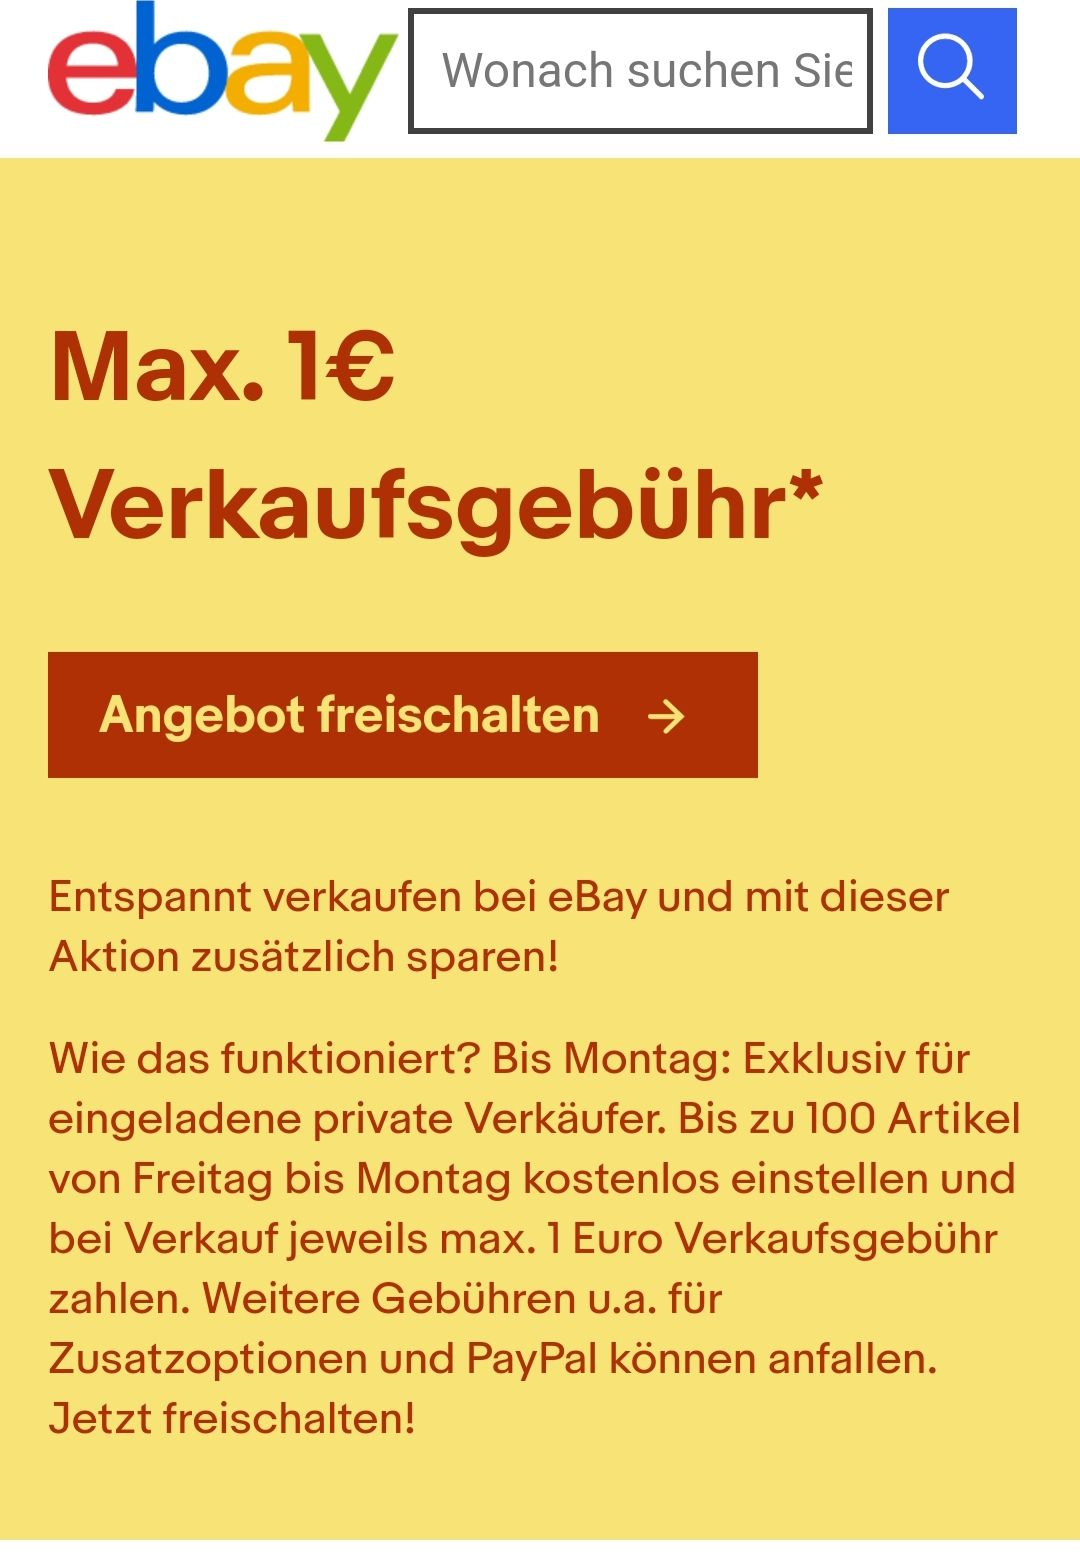 Nur Auf Einladung Ebay Max 1 Euro Verkaufsgebuhr Mydealz De